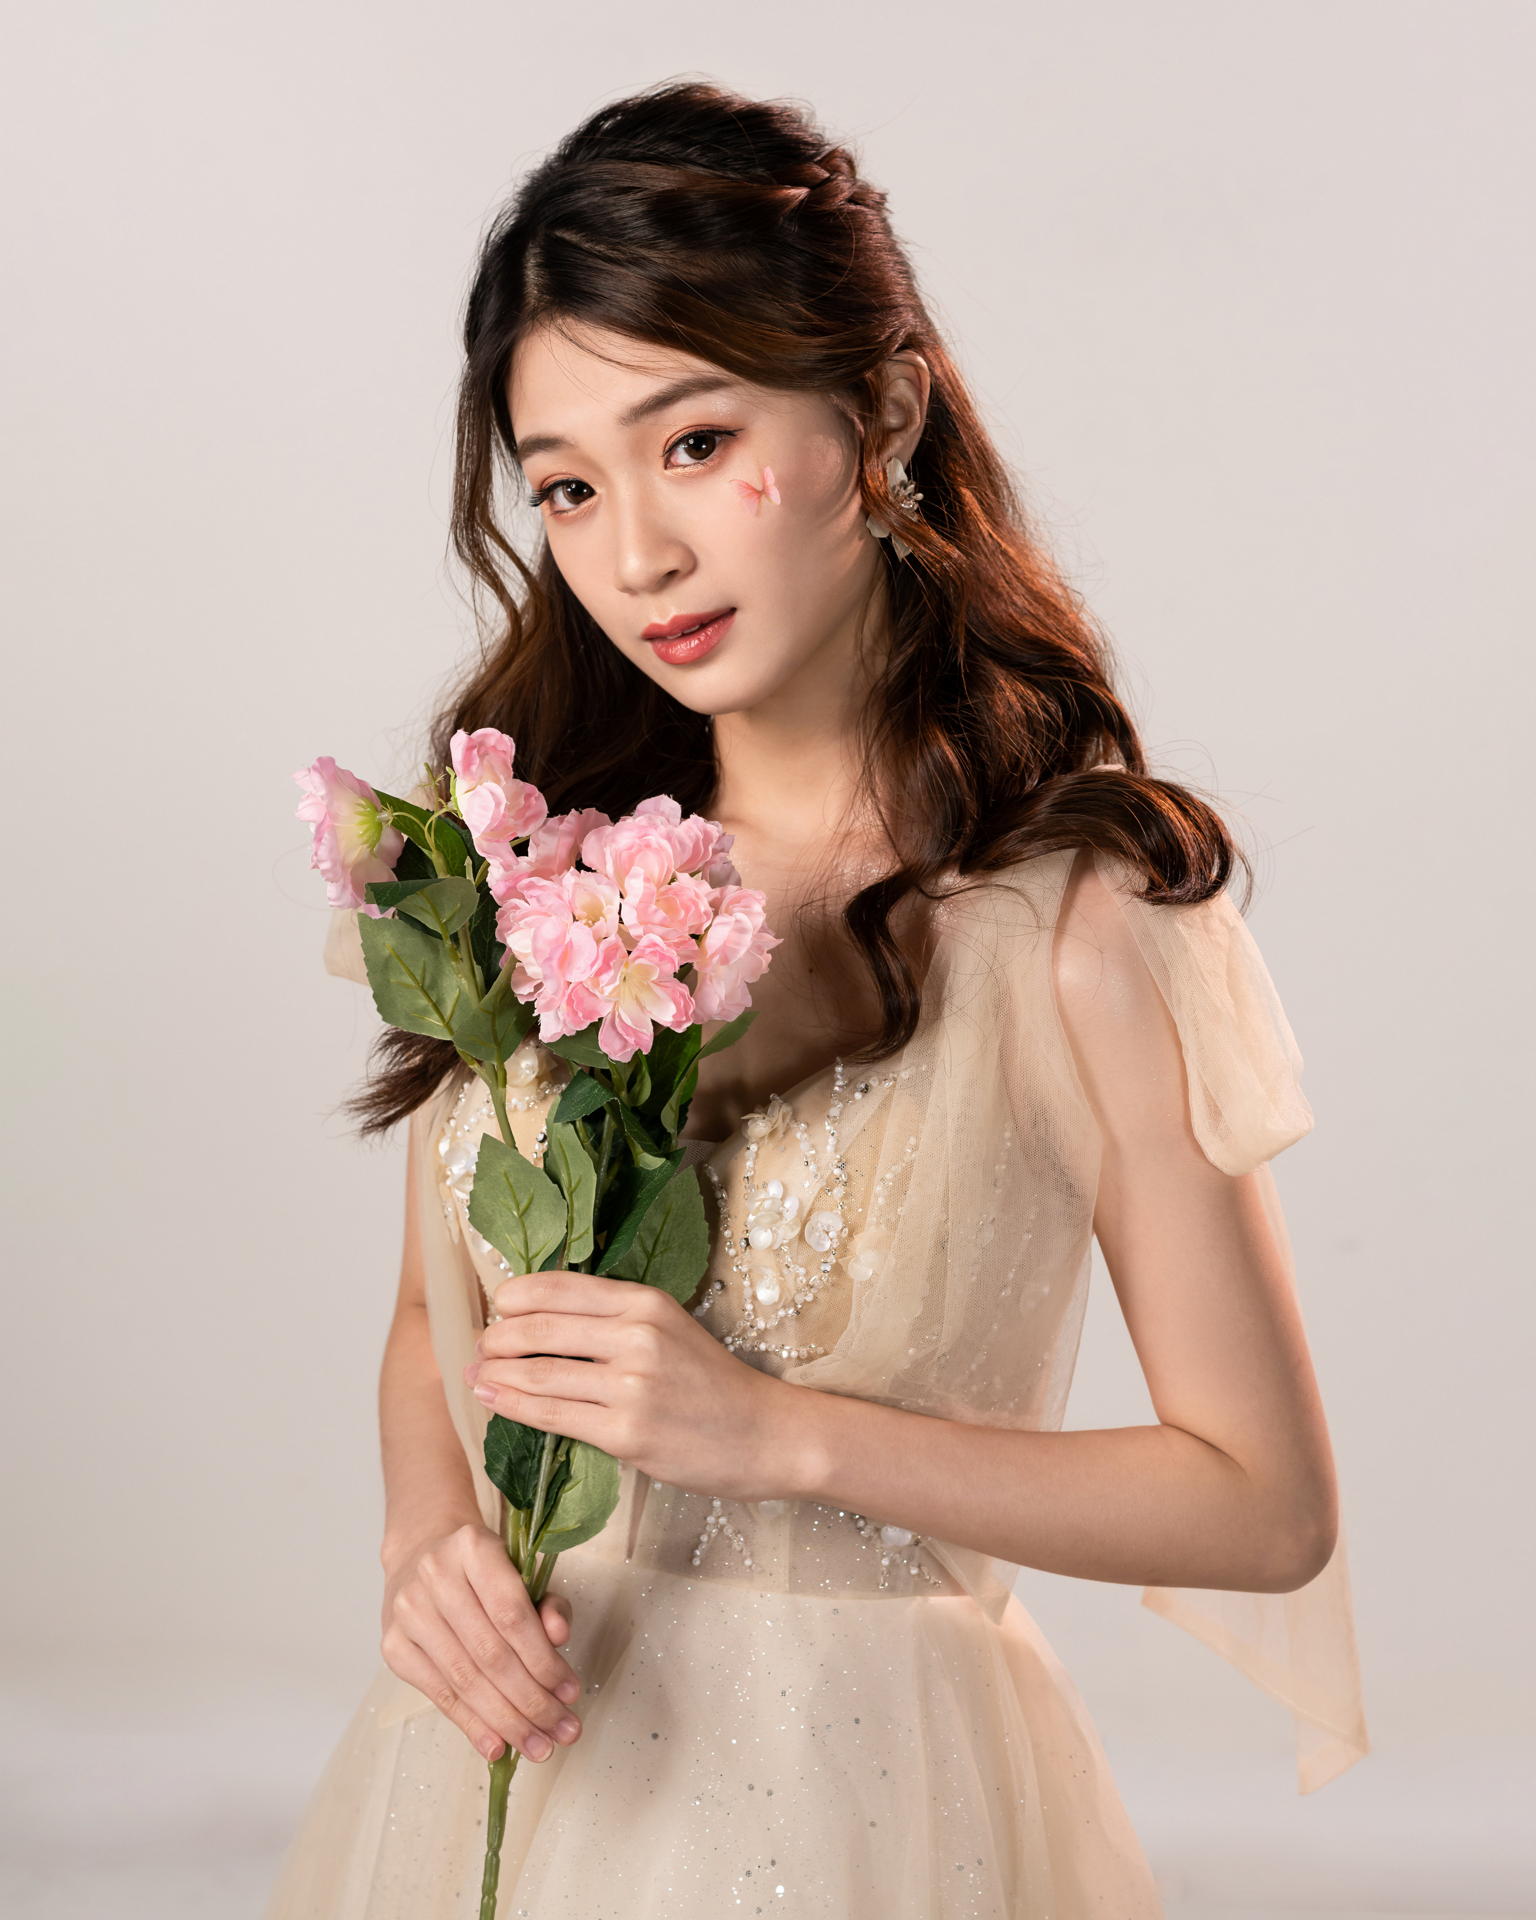 Asian Model Women Long Hair Dark Hair Flowers Bouquets Earrings Dress 1536x1920